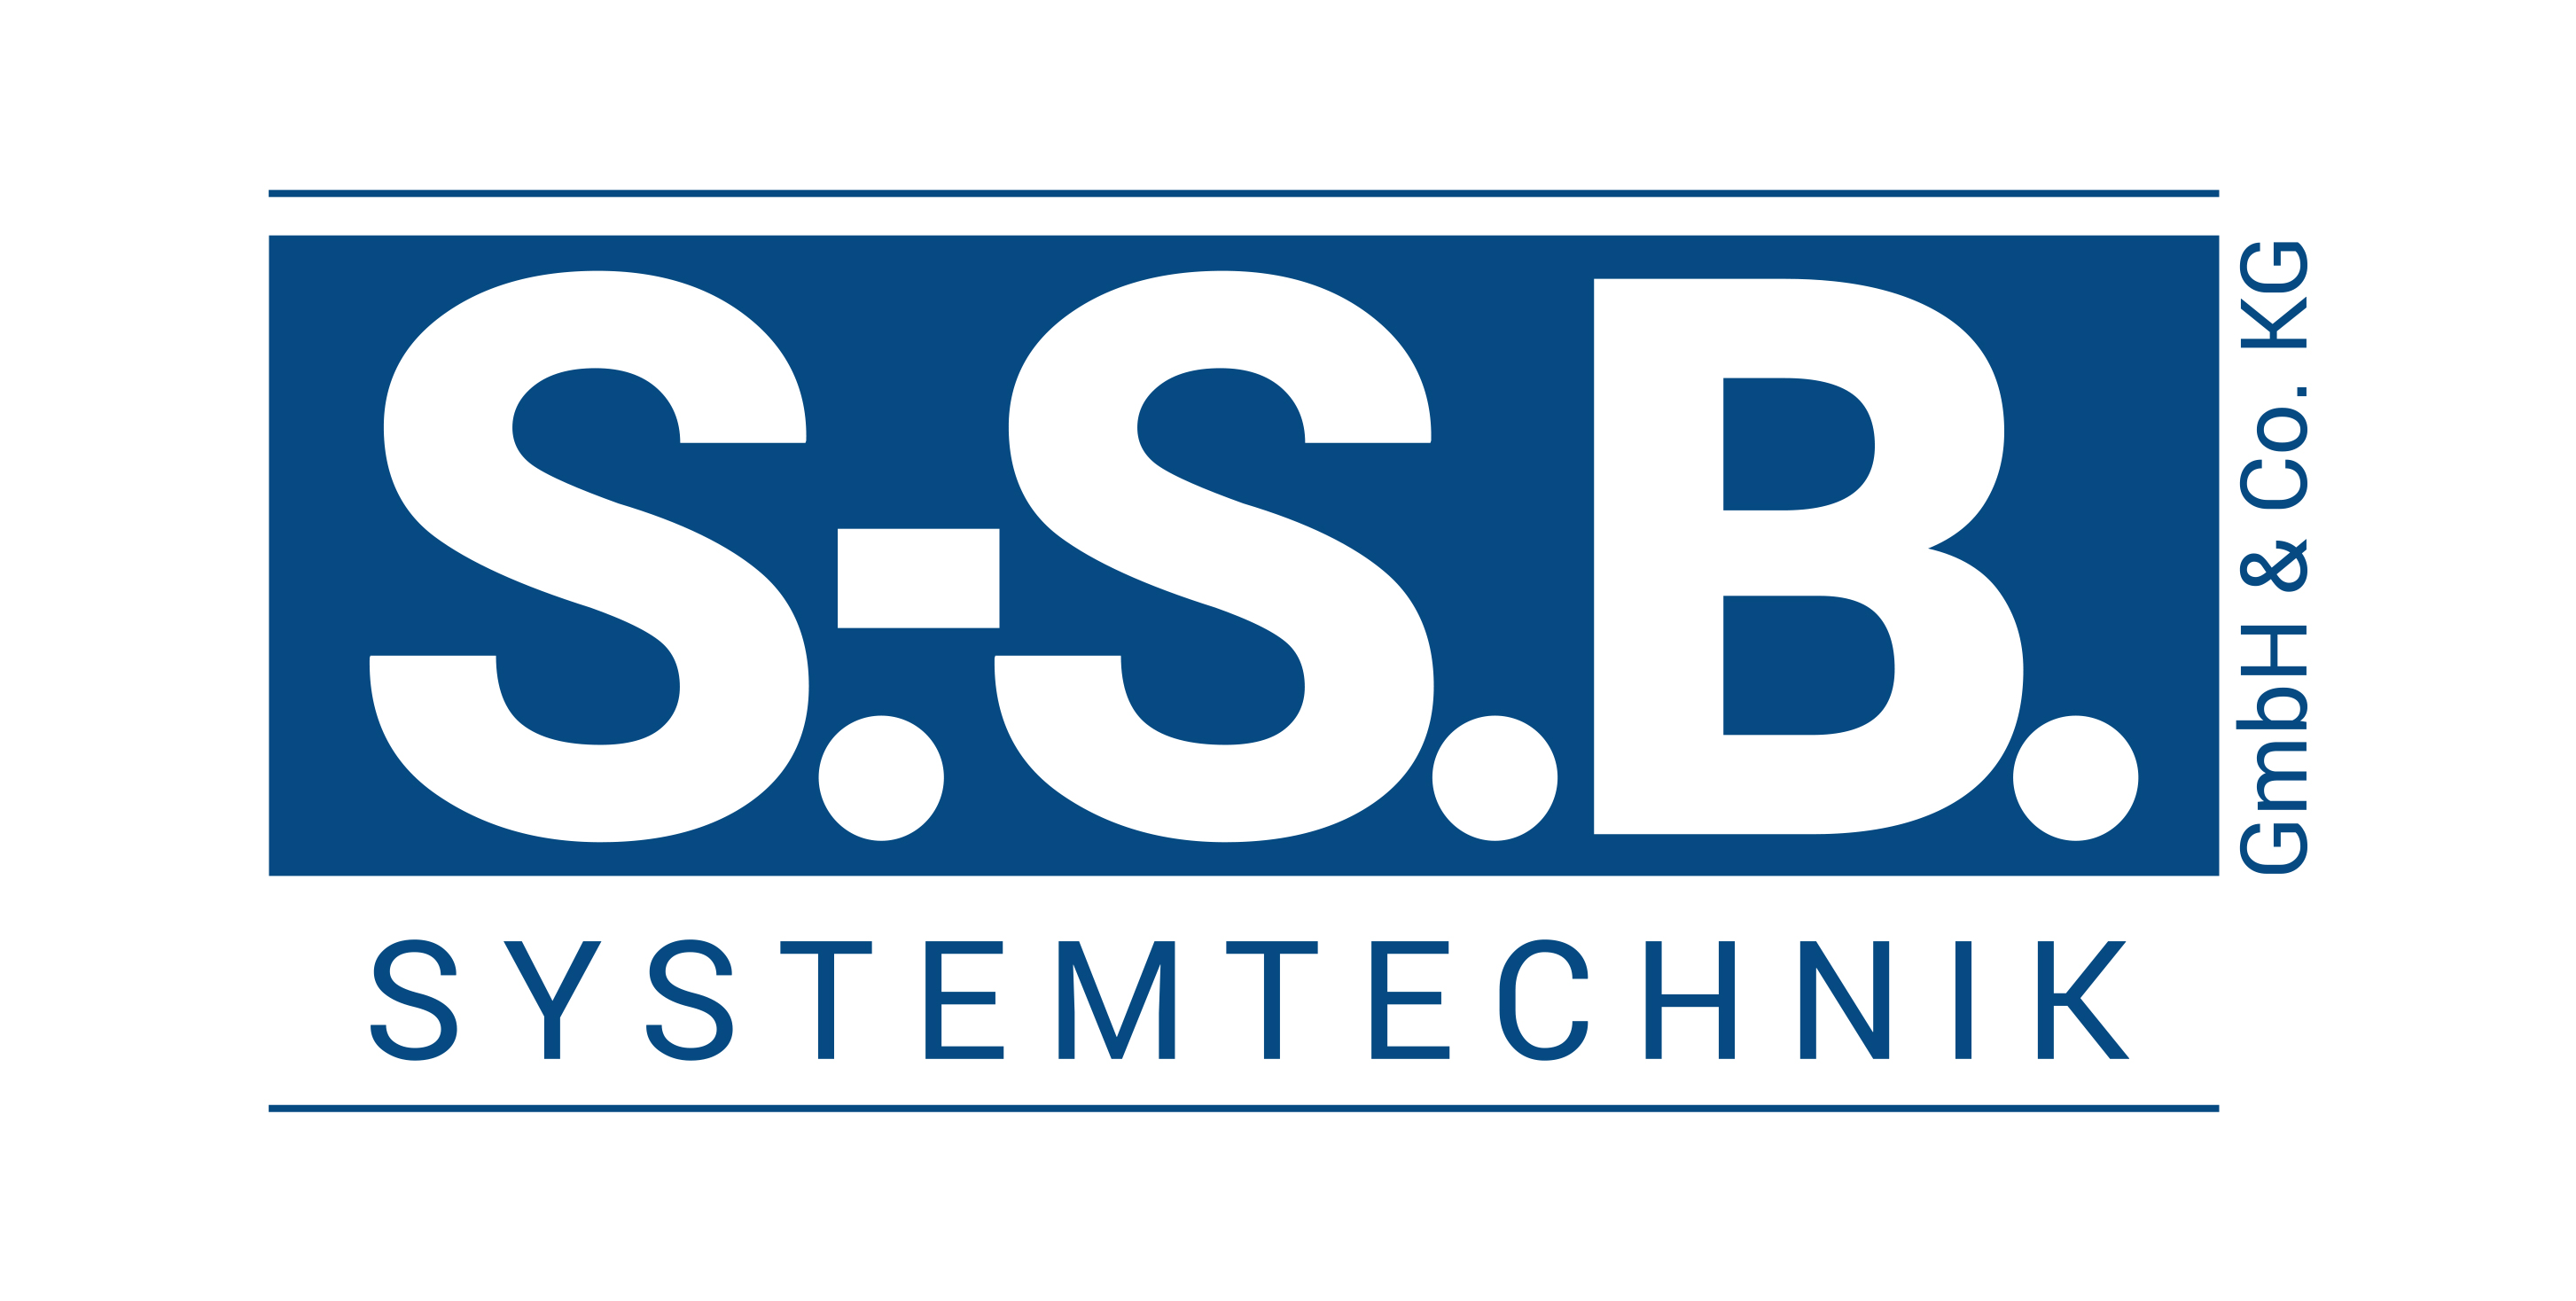 S.-S.B. Systemtechnik GmbH & Co. KG